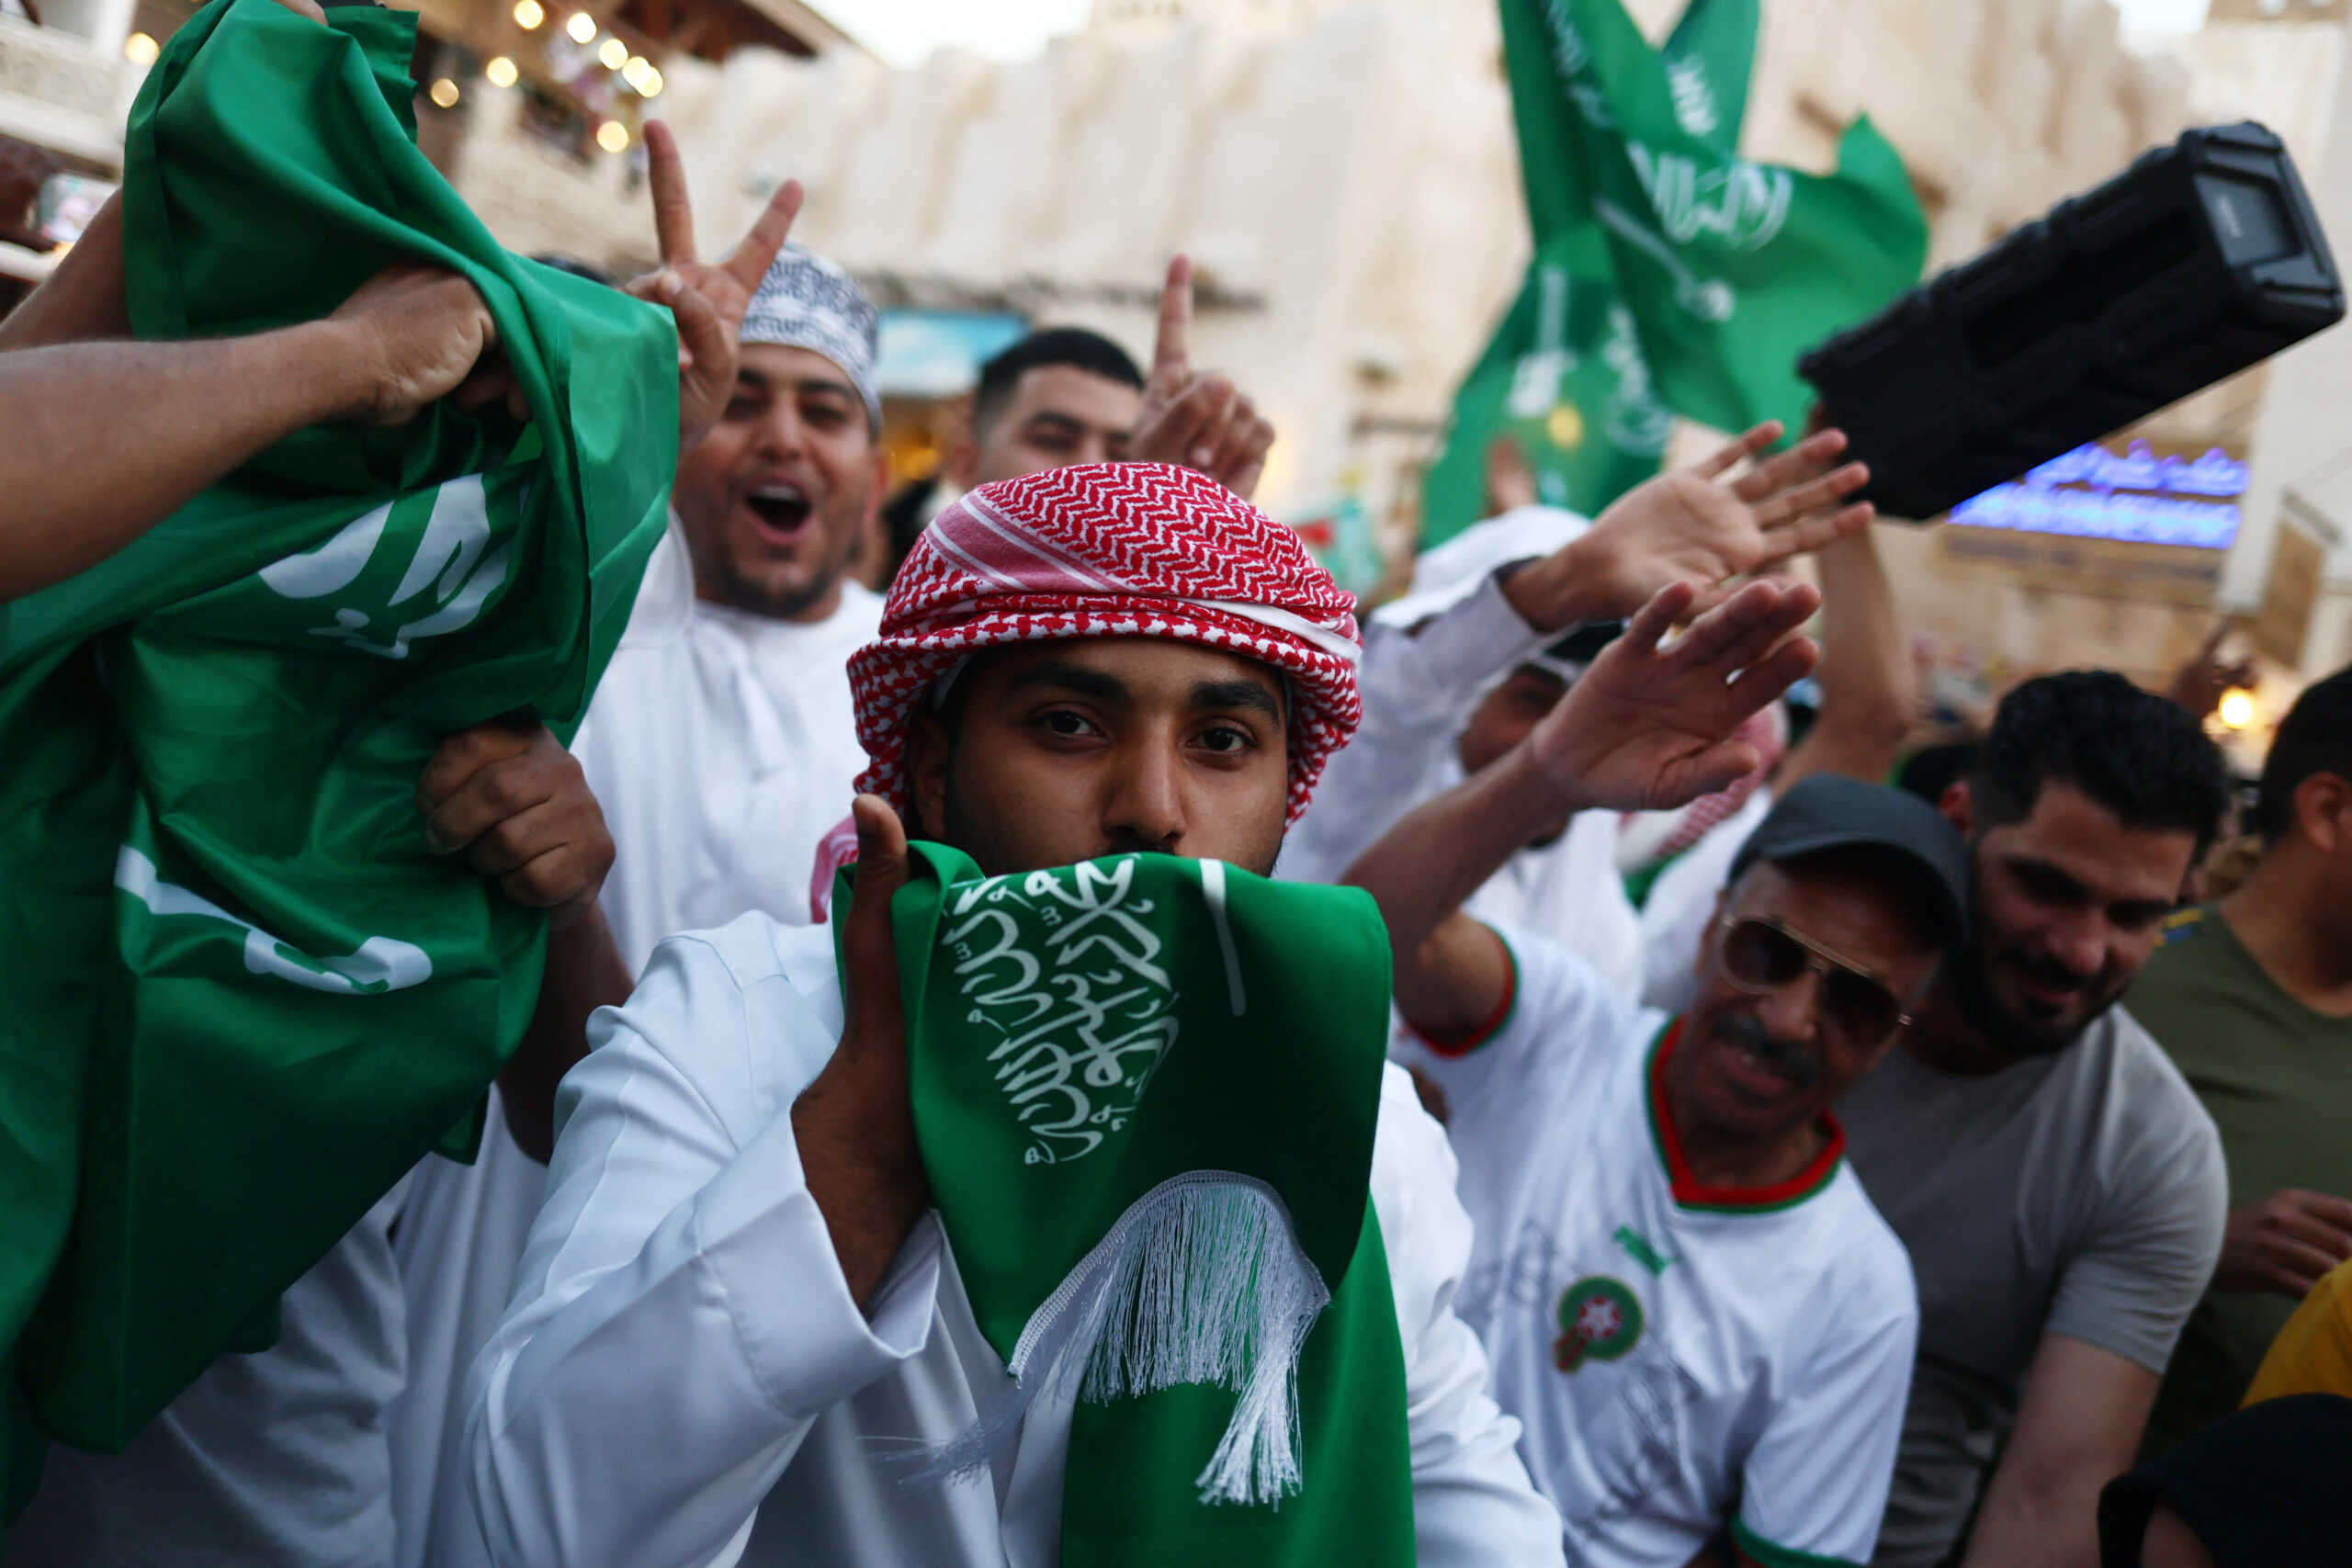 Μουντιάλ 2022: «Τρέλα» στη Σαουδική Αραβία για τη νίκη επί της Αργεντινής – Ανακοινώθηκε επίσημη αργία